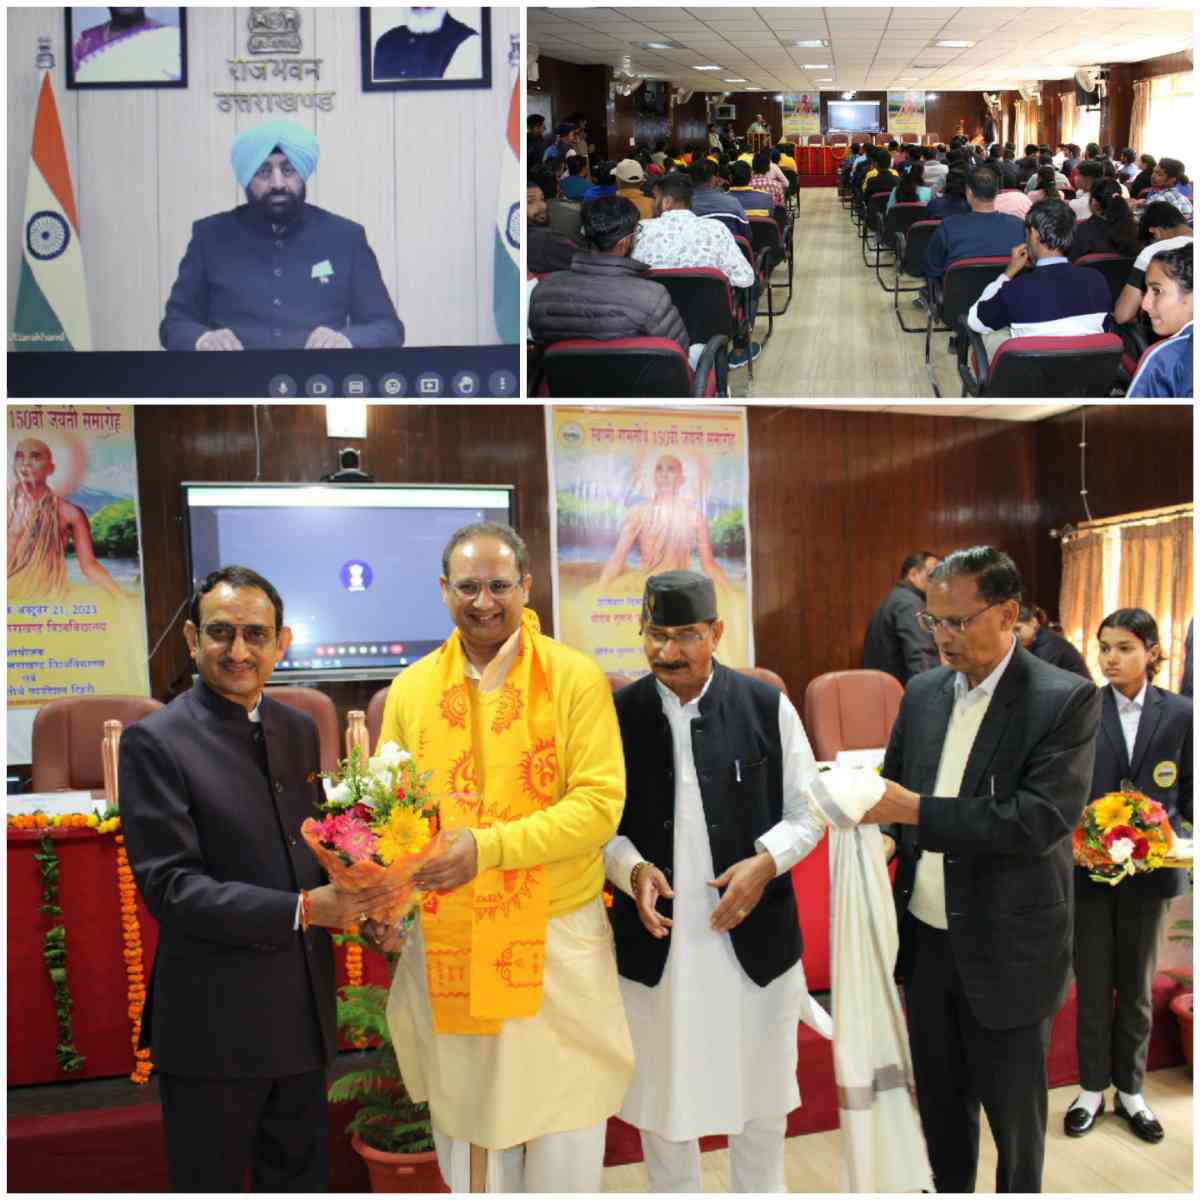 श्रीदेव सुमन उत्तराखण्ड विश्वविद्यालय मुख्यालय में किया गया स्वामी रामतीर्थ जी की 150 वीं जयंती भव्य आयोजन